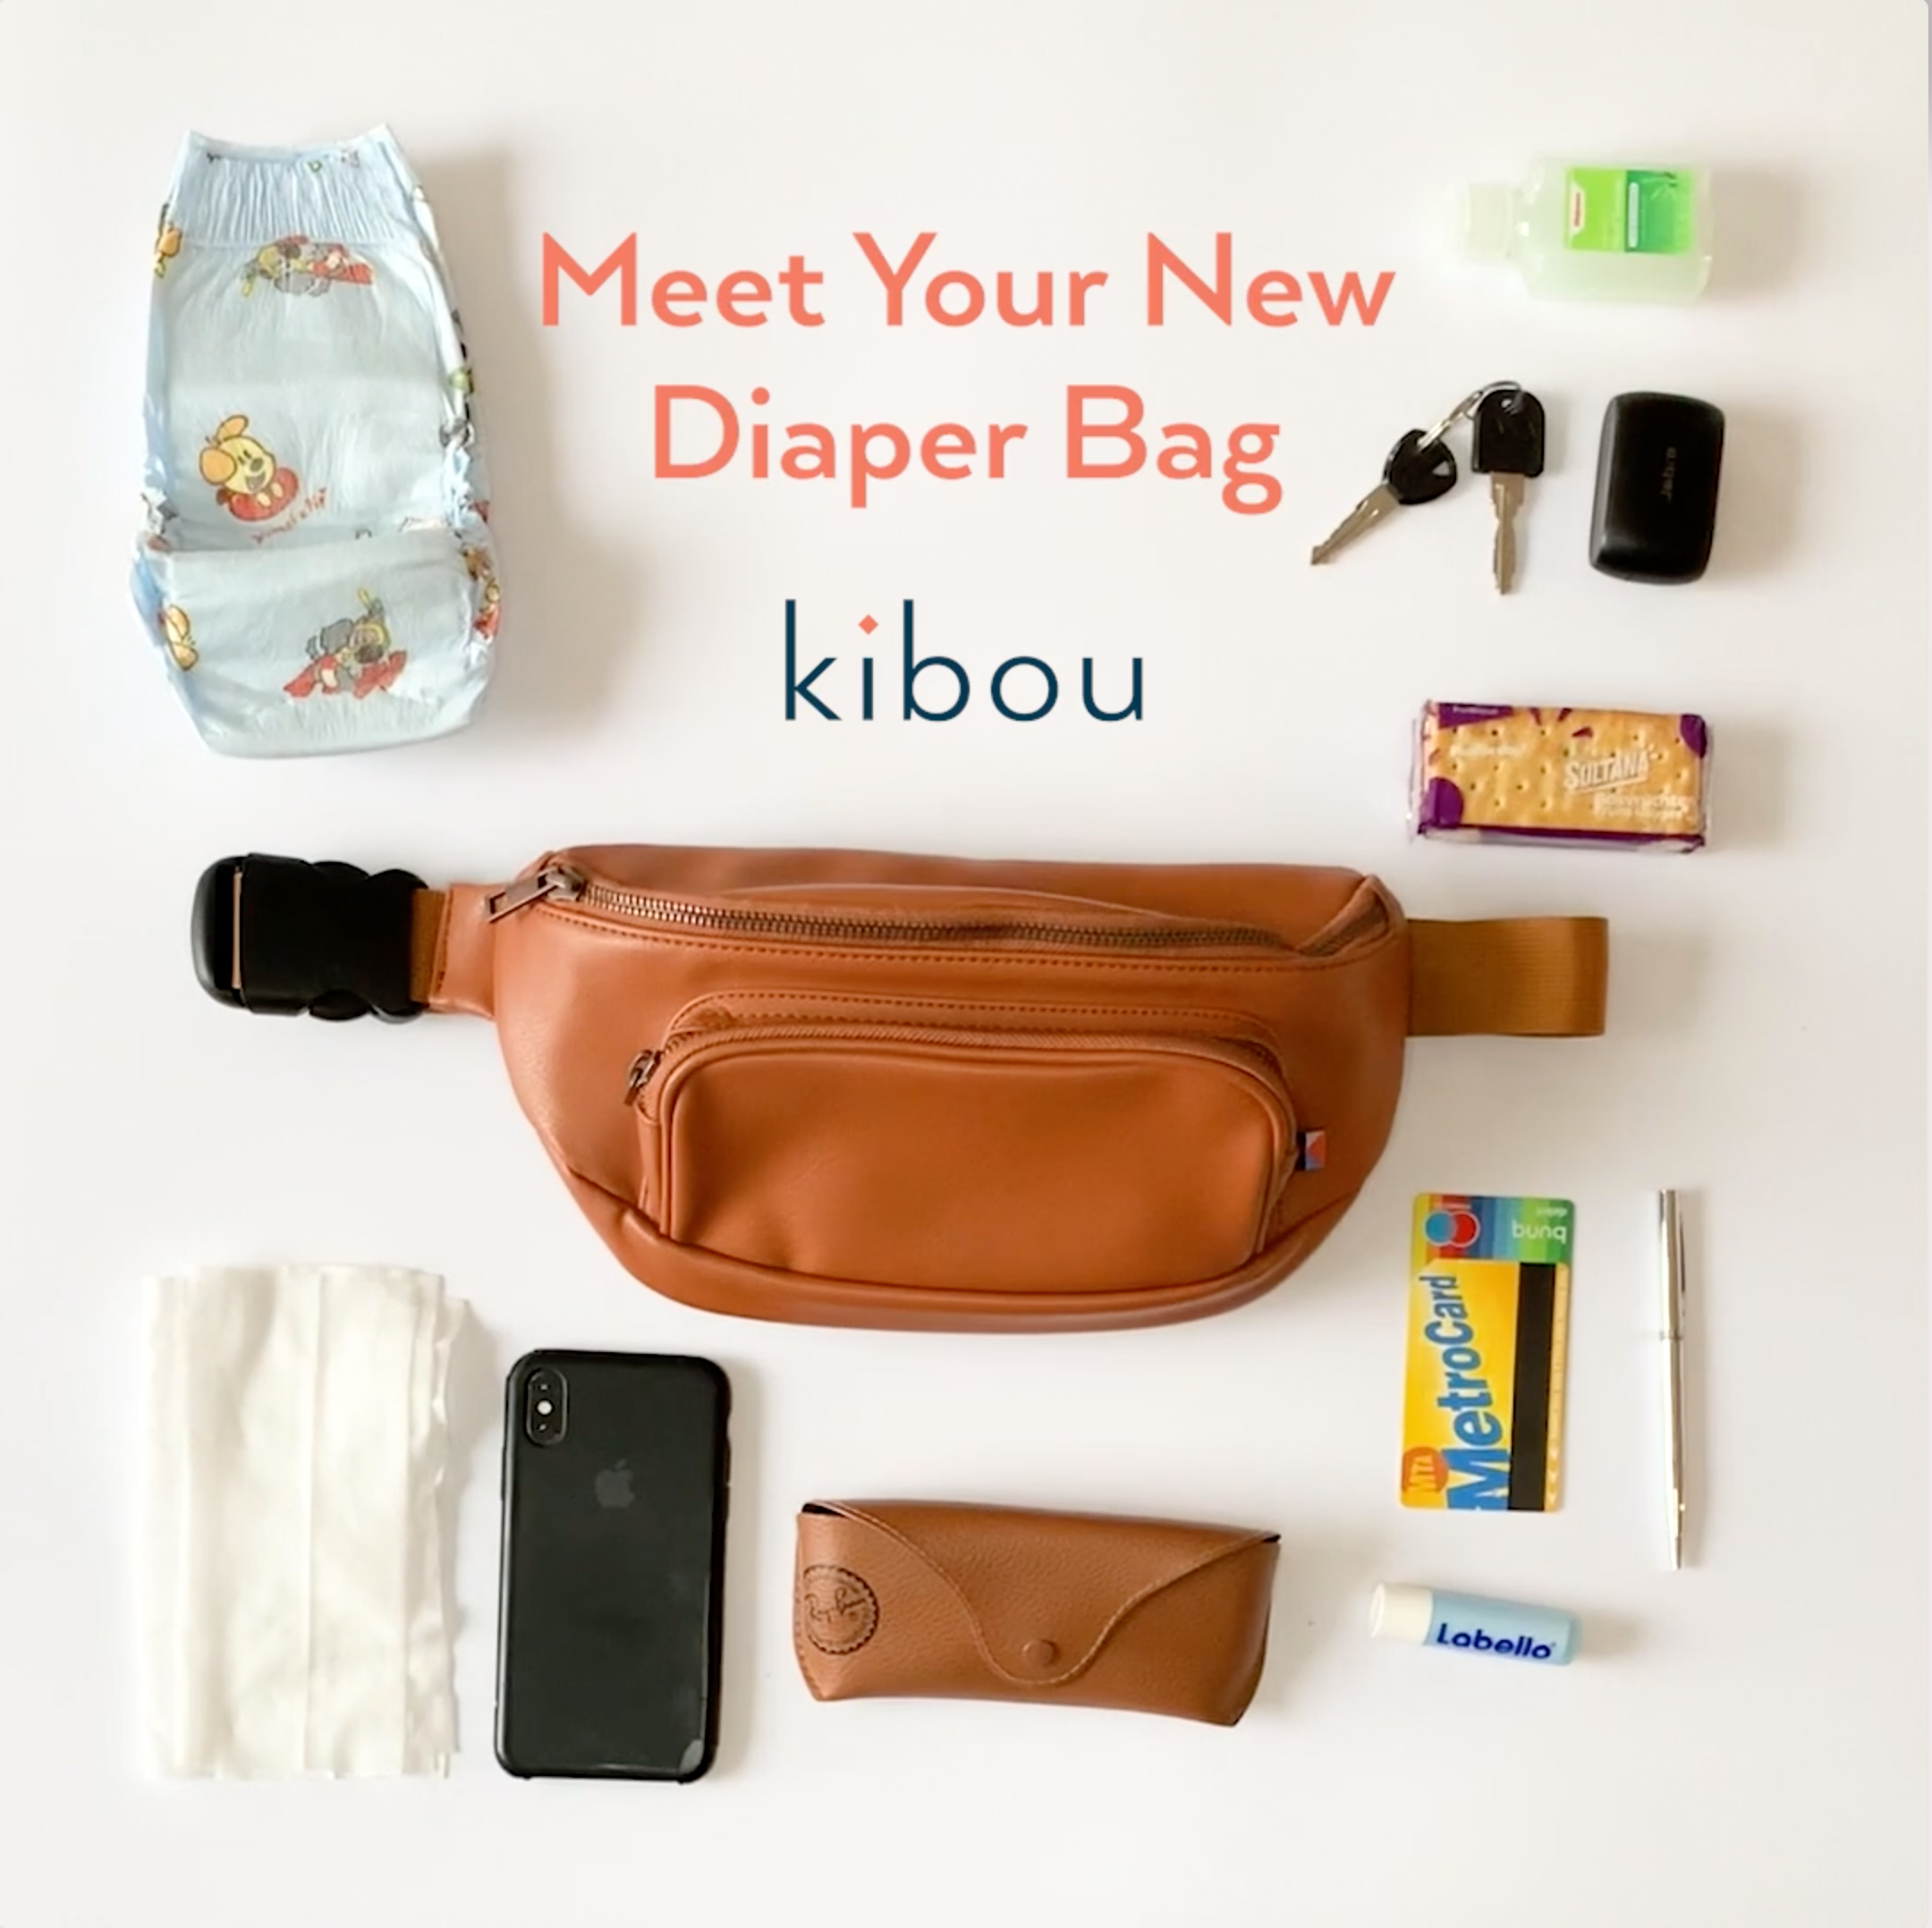 Kibou Diaper Bag